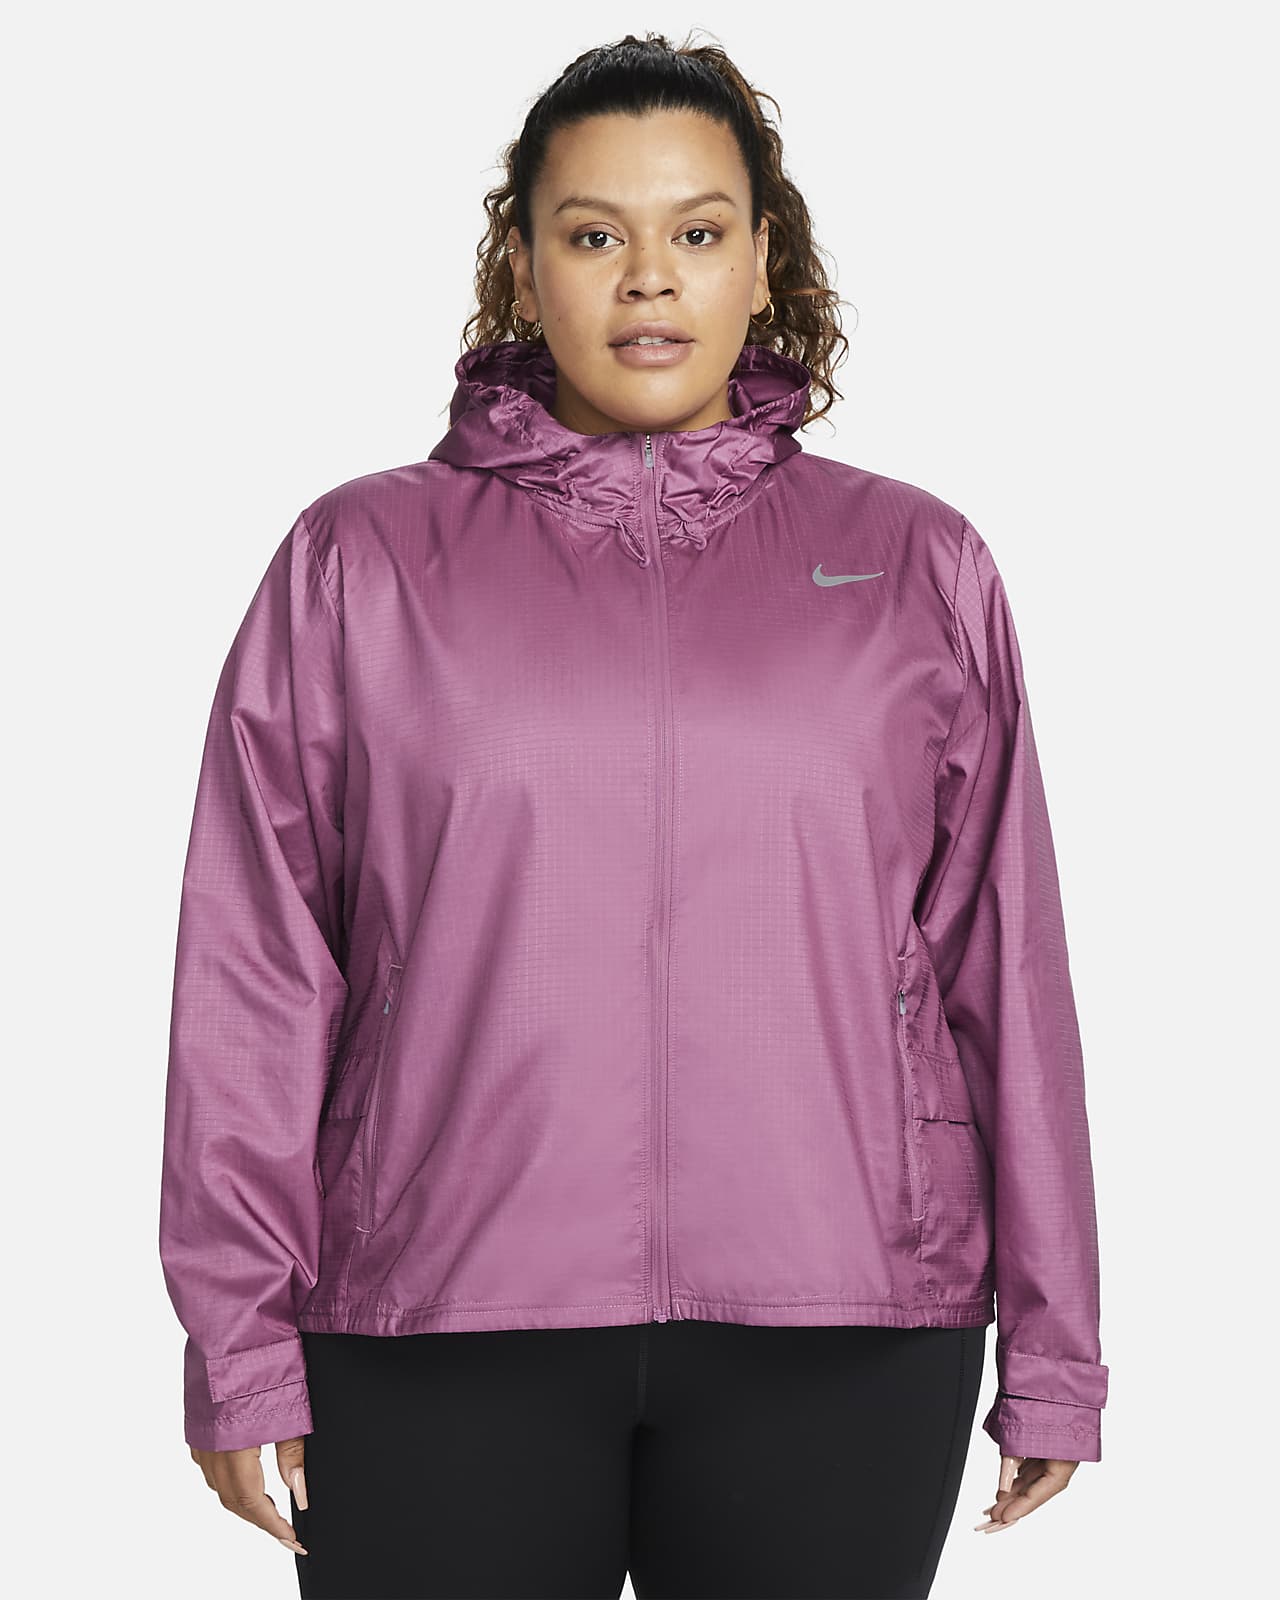 Nike Essential Damen-Laufjacke (große Größe)